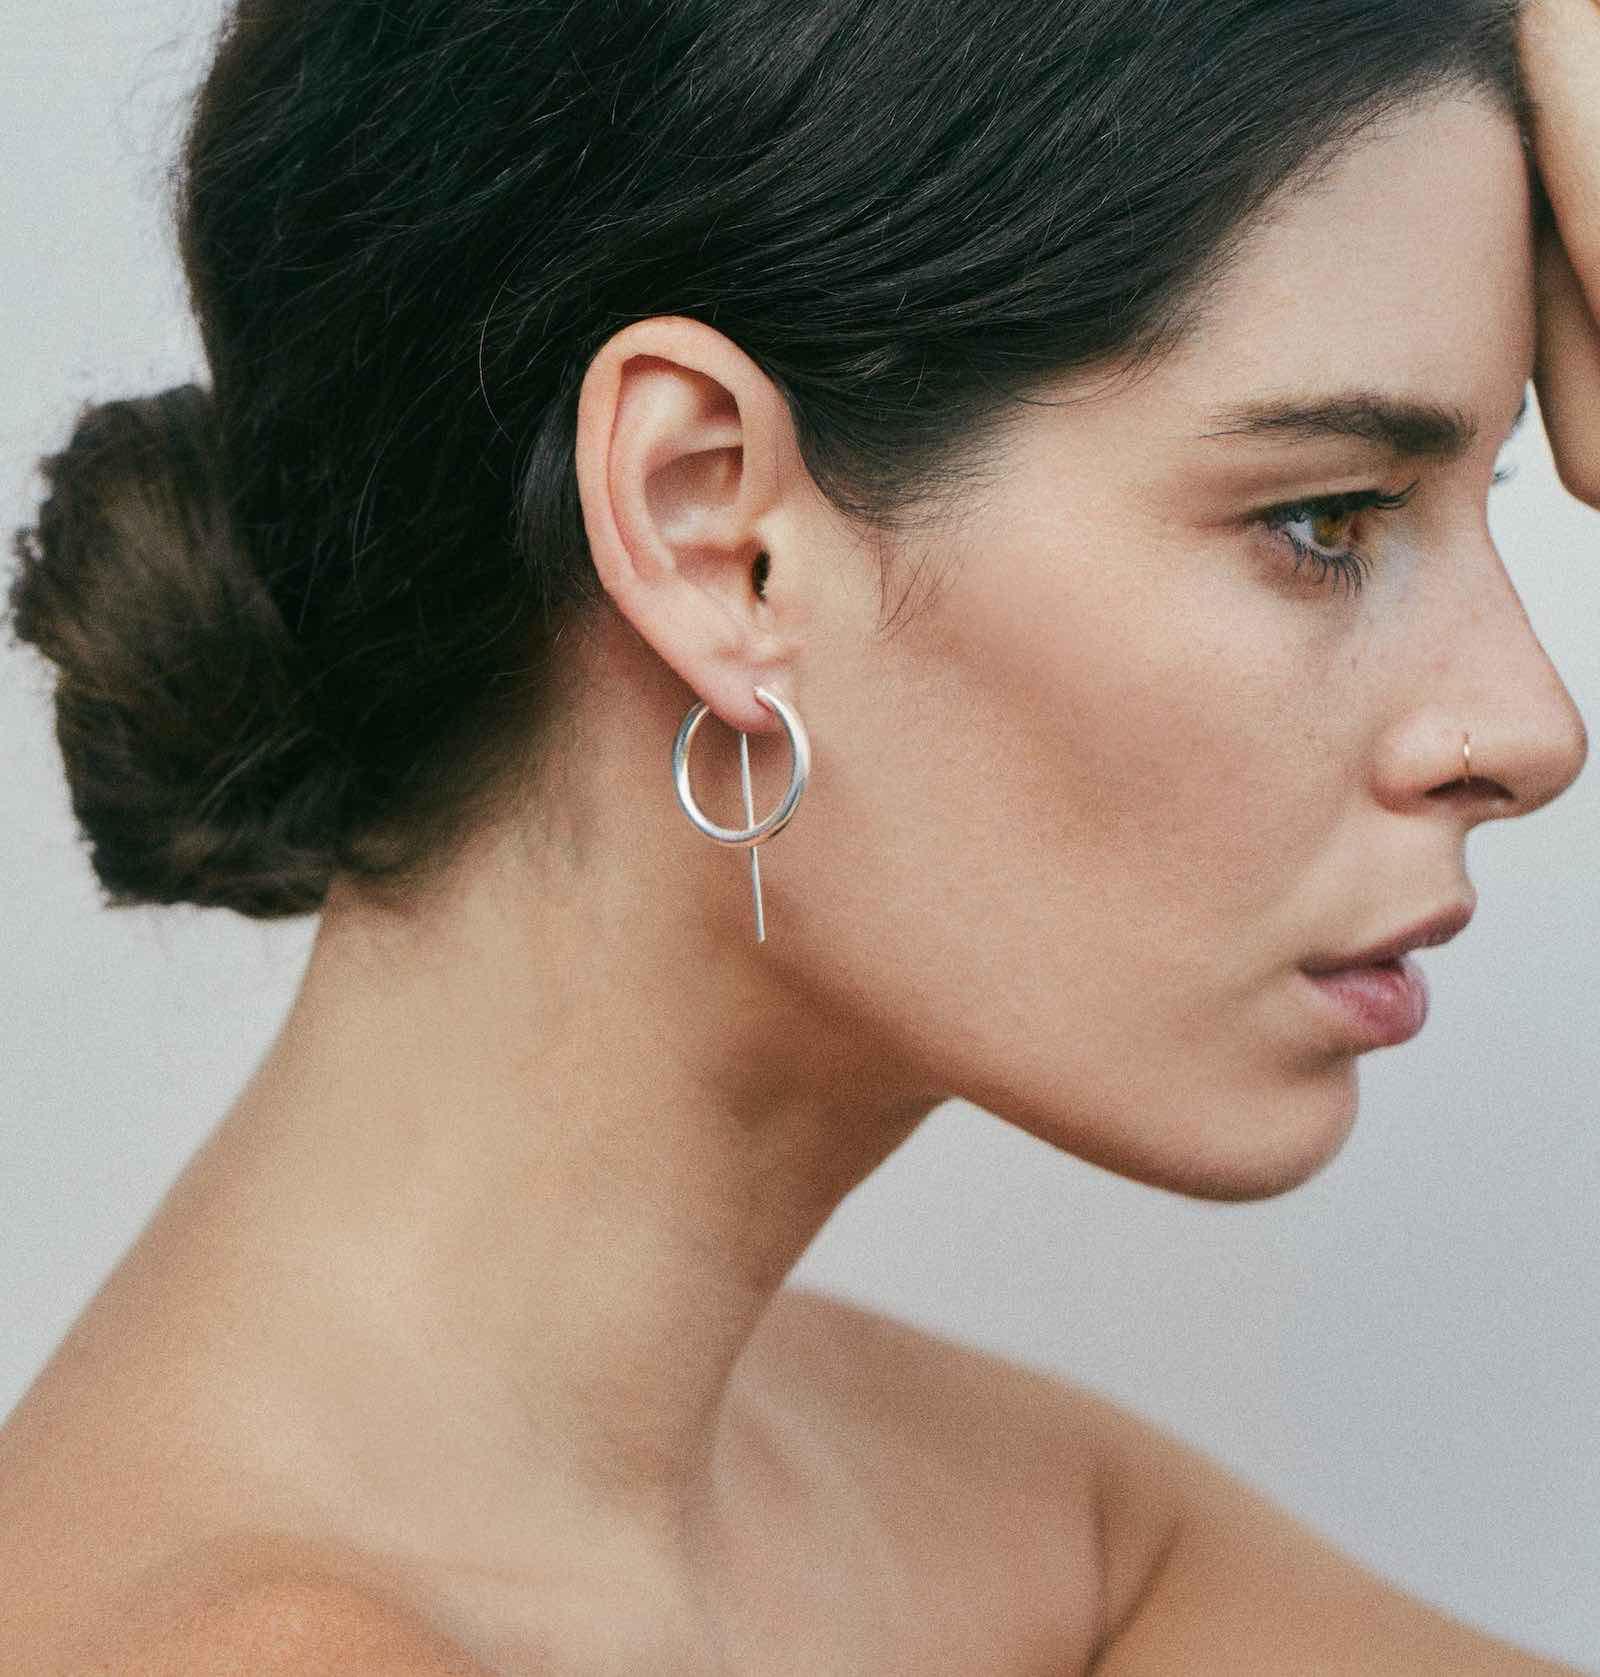 Small Sterling Silver Hoop Earrings | Classy Earrings | JACLYN GARCÍA SUÁREZ Earrings